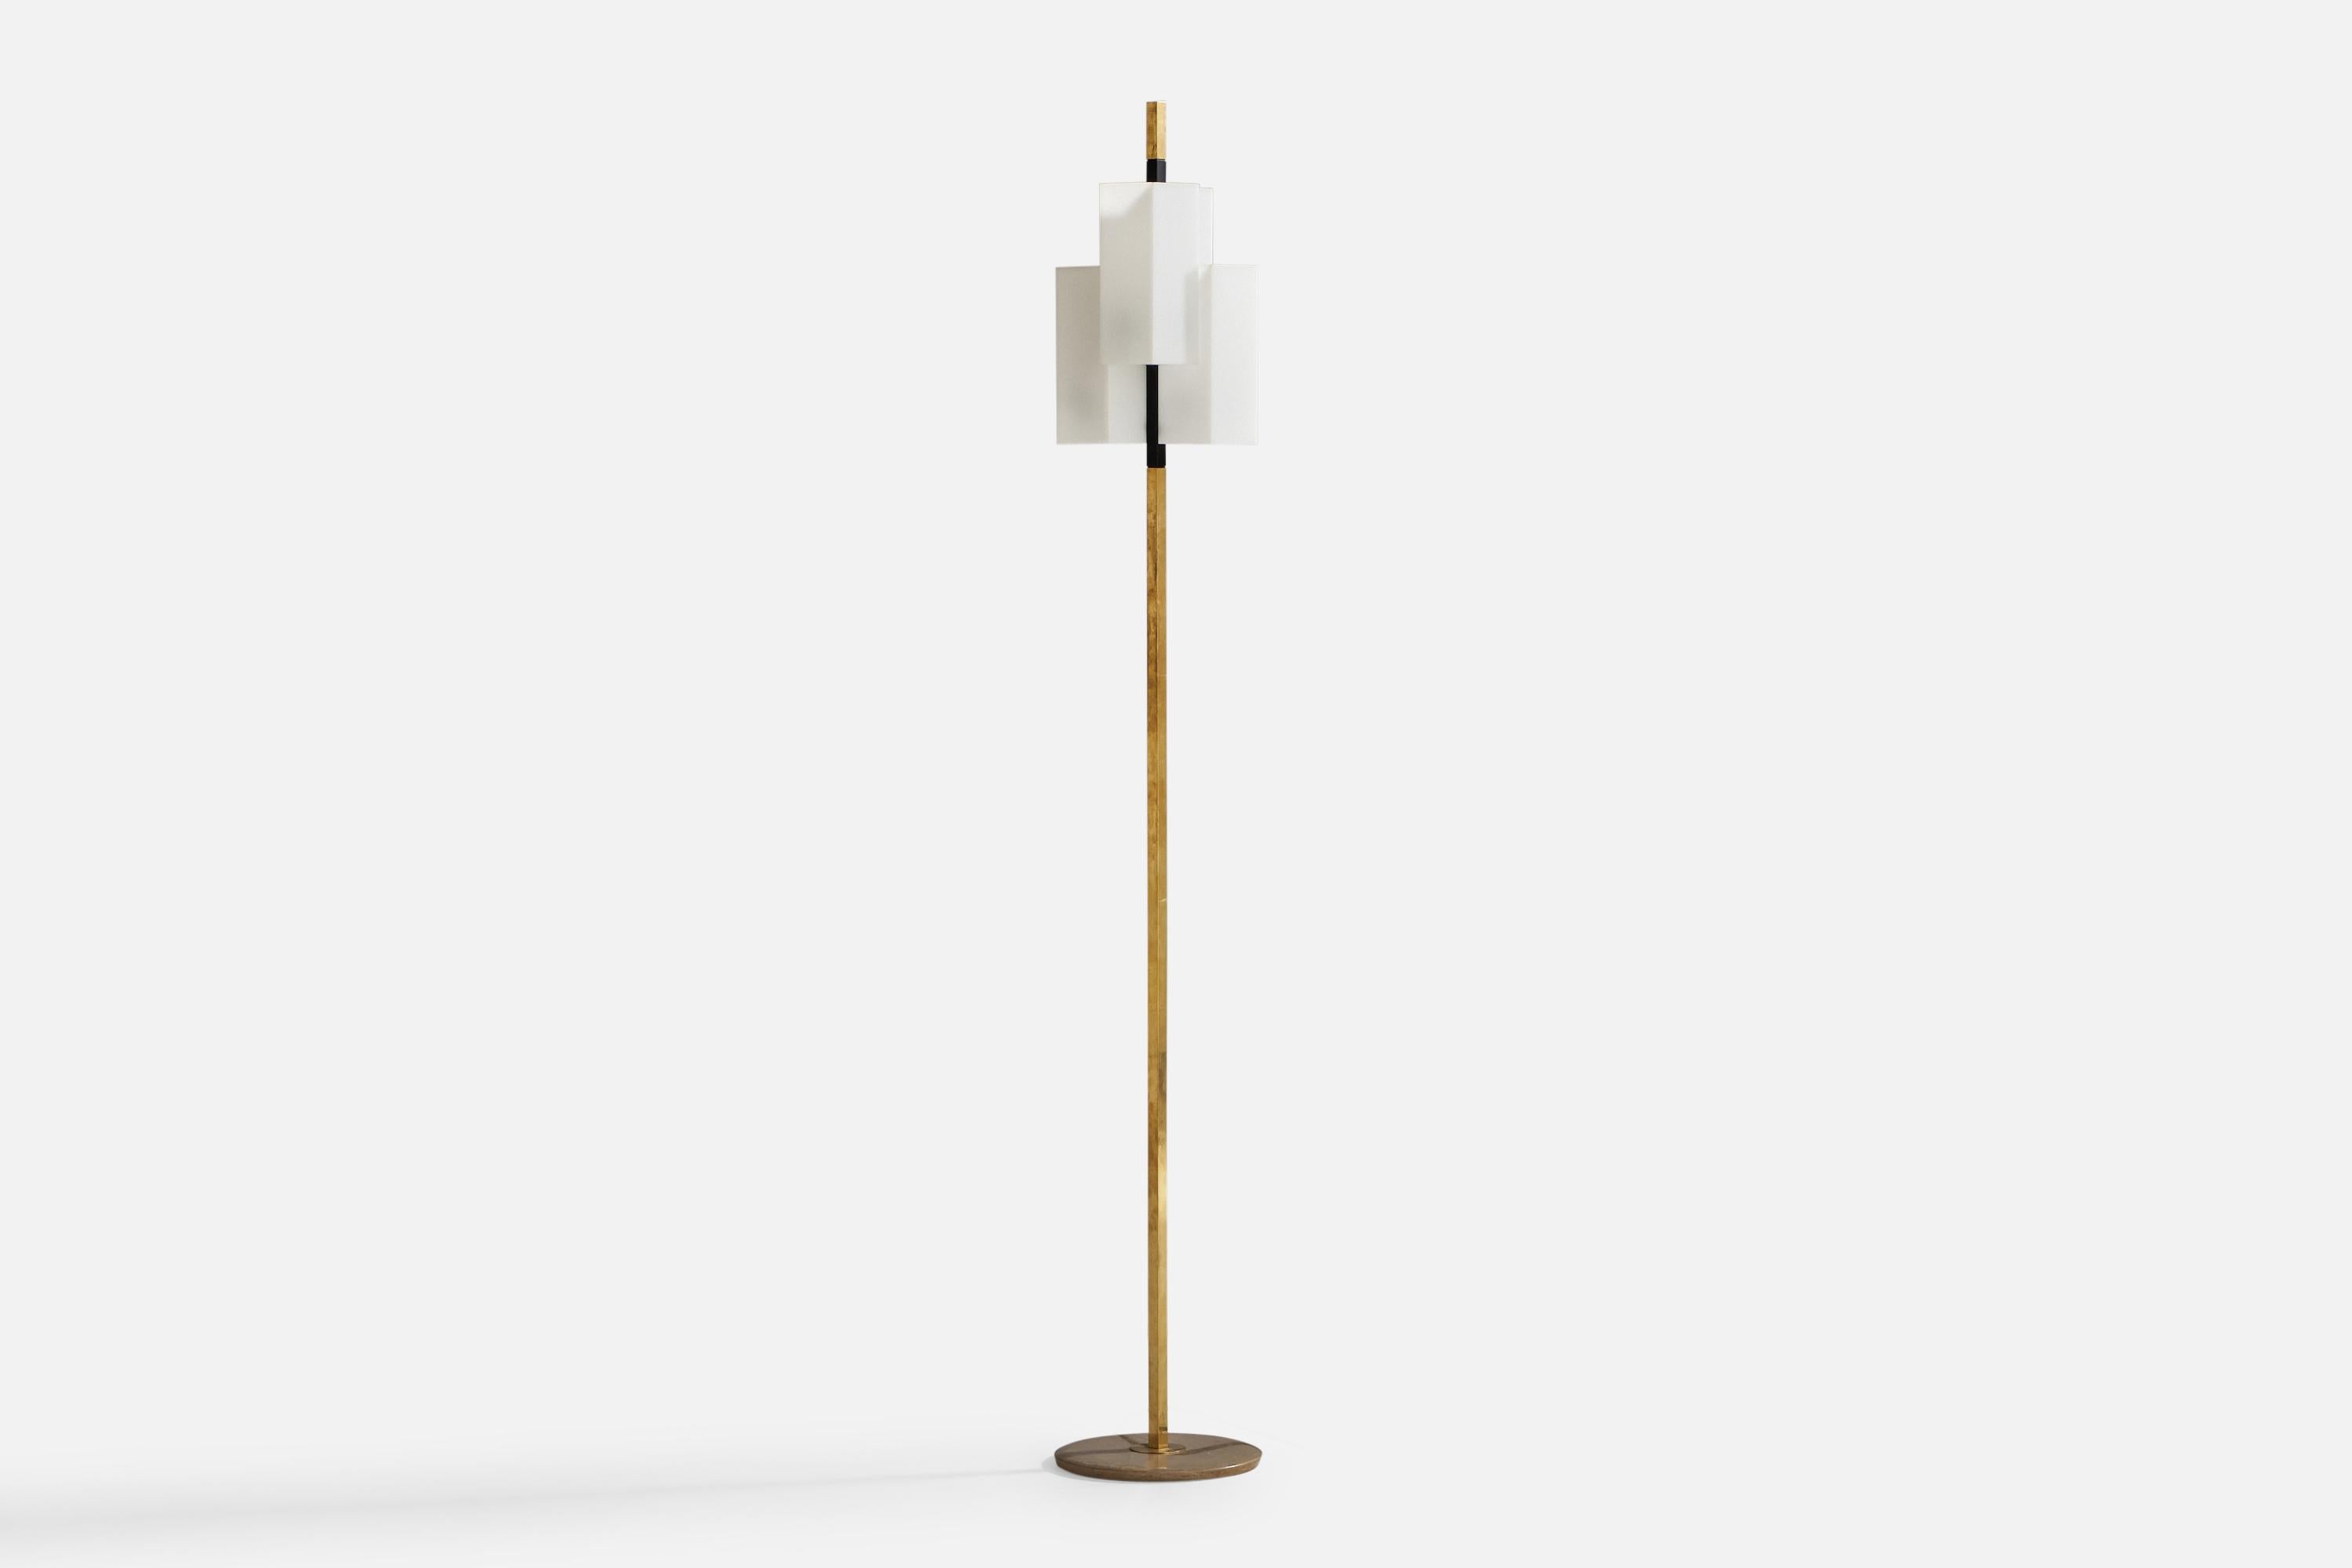 Lampadaire en laiton, métal laqué noir, marbre et acrylique conçu et produit par Stilux Milano, Italie, années 1960.

Dimensions globales (pouces) : 12